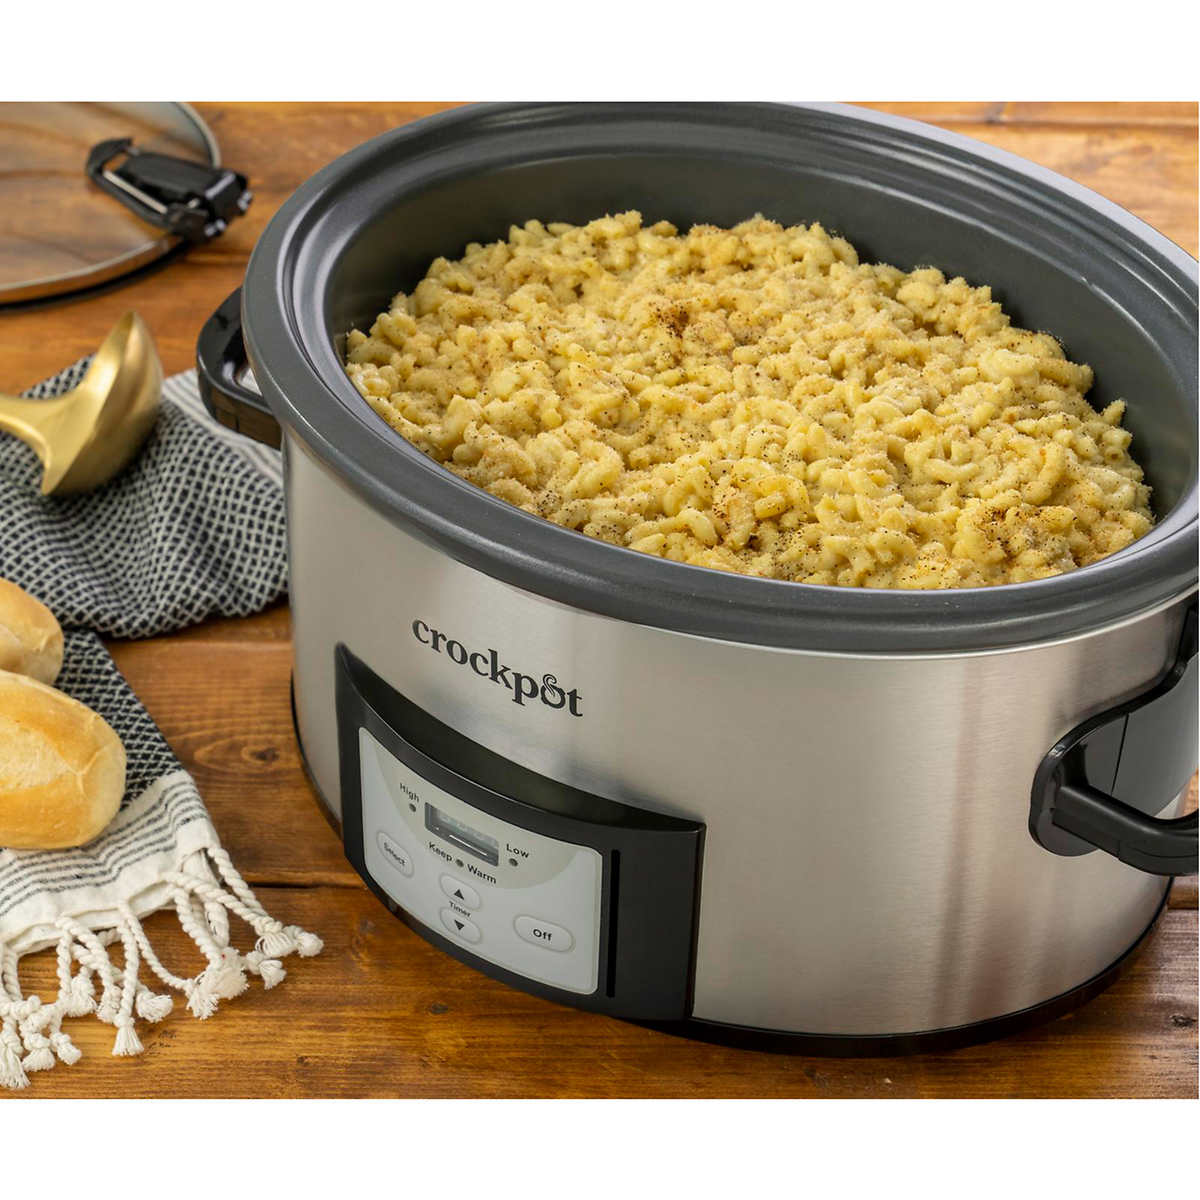 Crock-Pot Cook & Carry Digital Countdown Slow Cooker, 7 Quart - Walmart.com